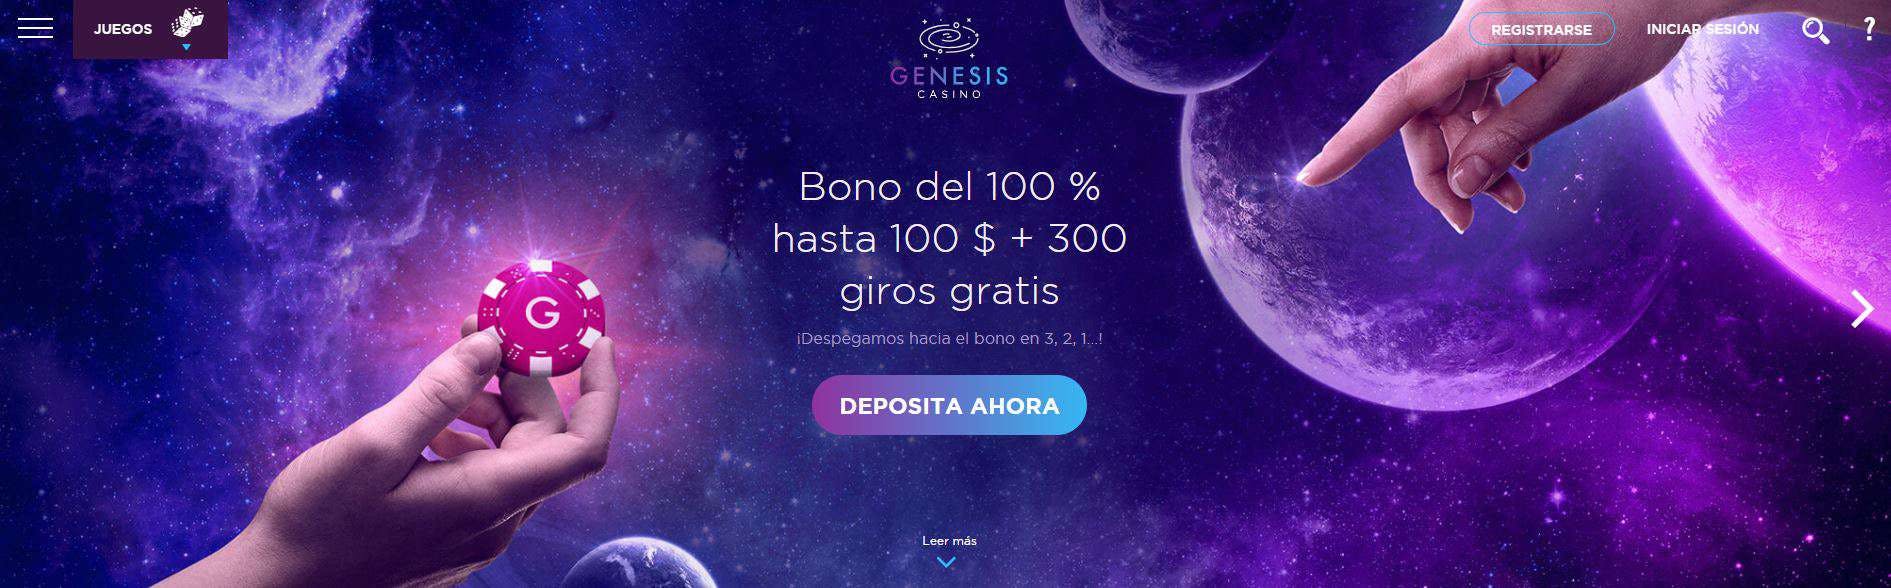 bono e promozione del Genesis Casino Perú